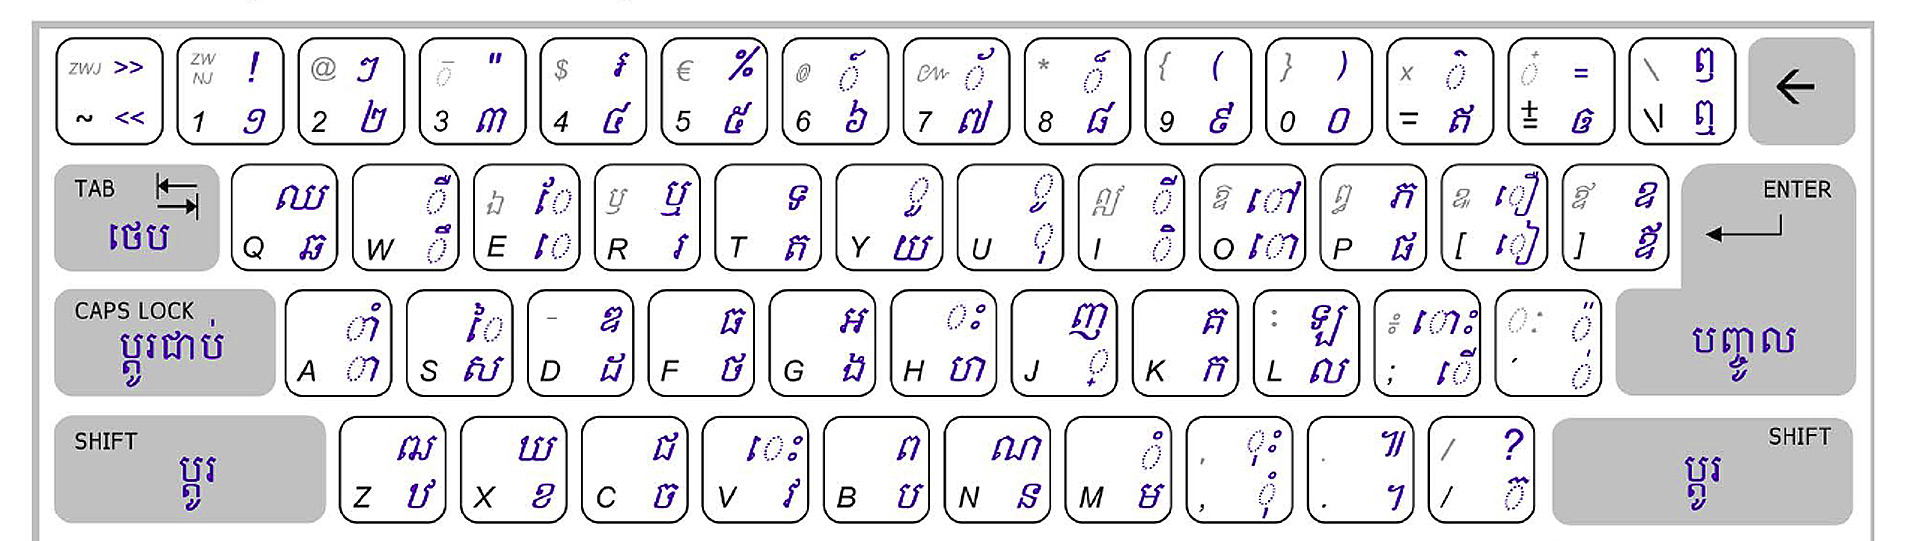 Khmer Unicode Layout